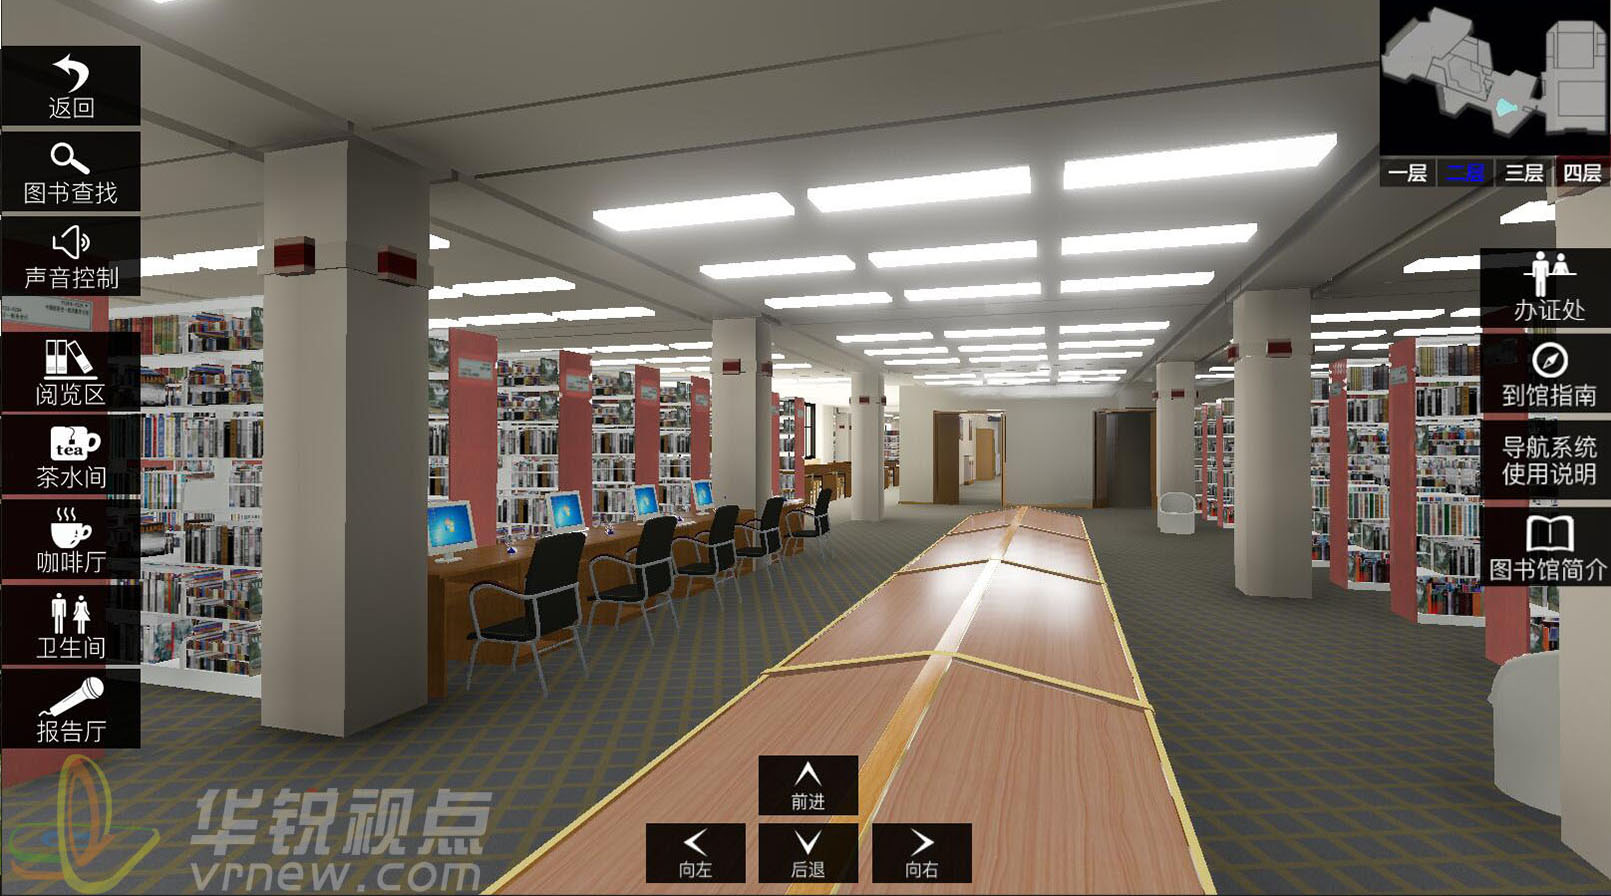 图书馆米乐m6
导览系统